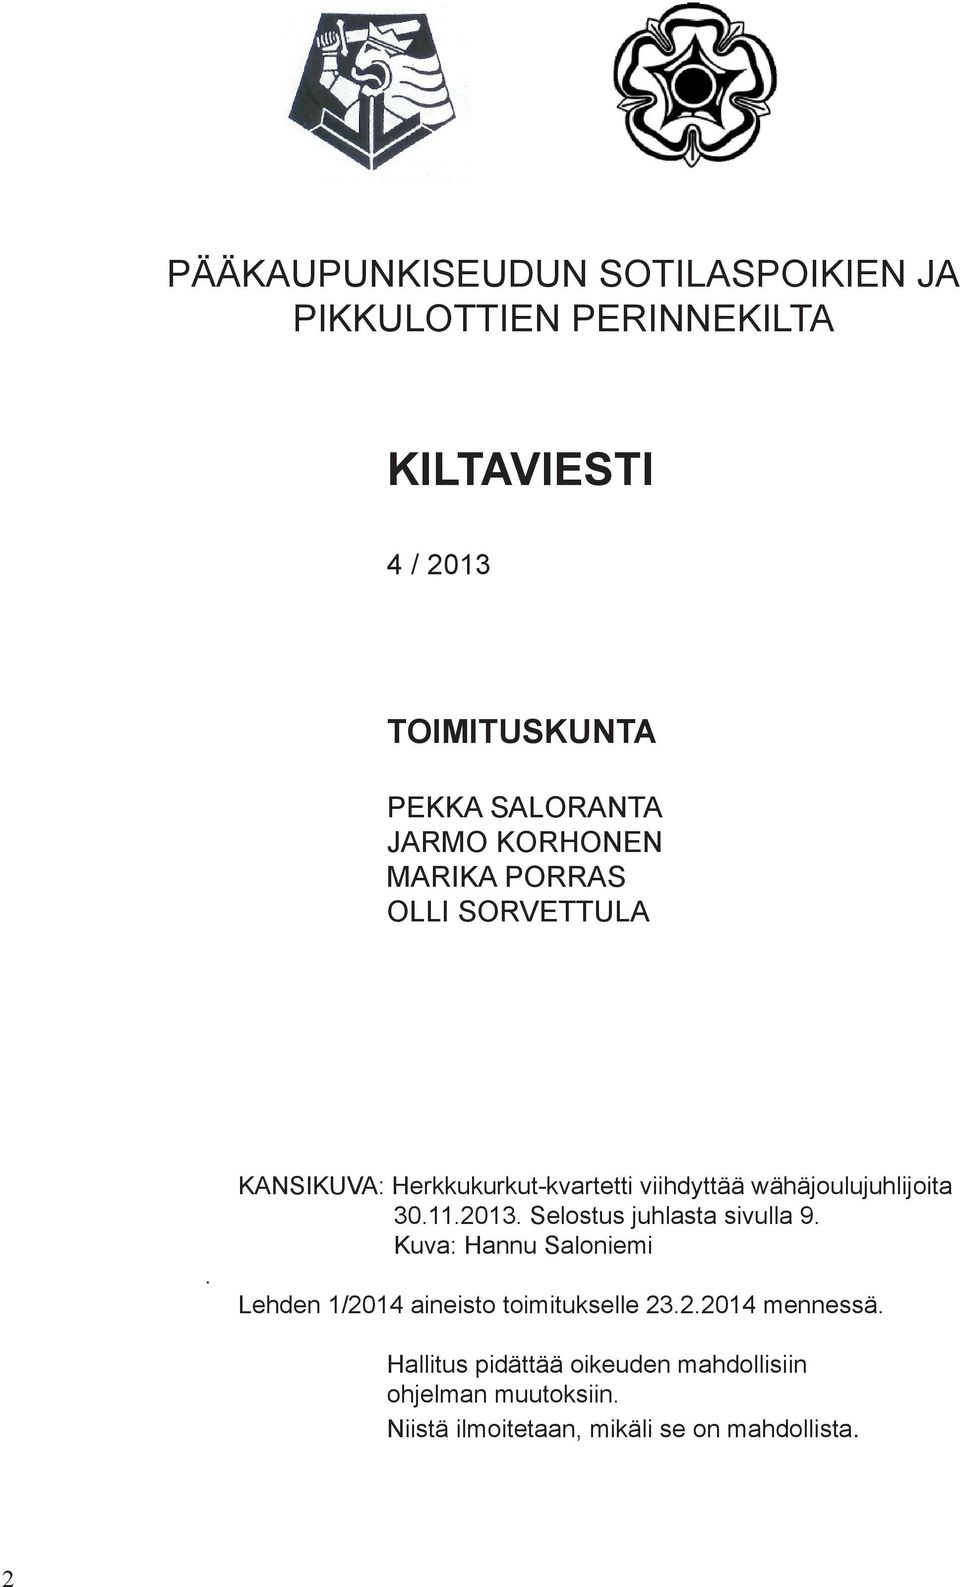 KANSIKUVA: Herkkukurkut-kvartetti viihdyttää wähäjoulujuhlijoita 30.11.2013. Selostus juhlasta sivulla 9.